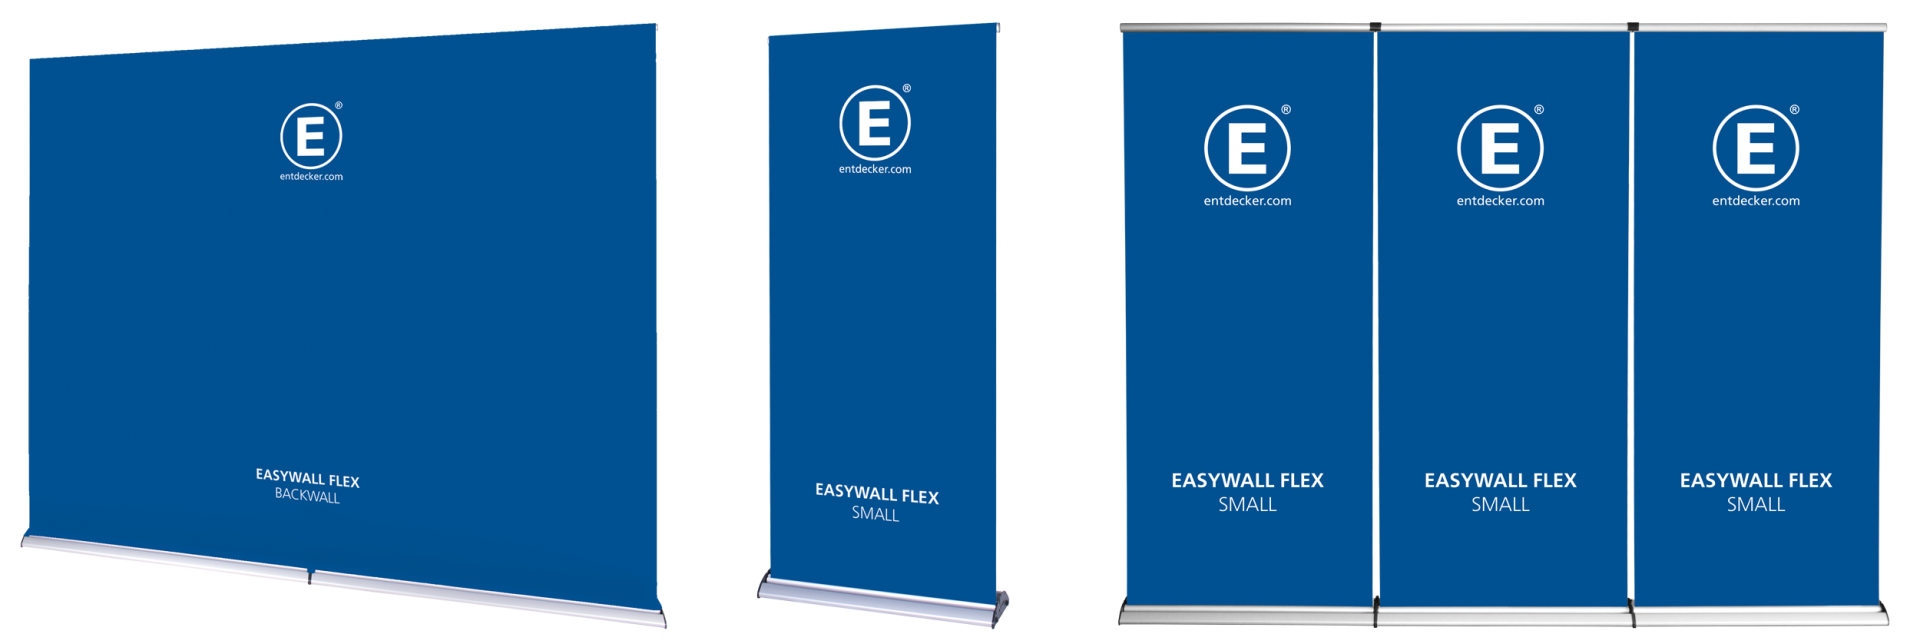 Easywall Flex Uebersicht